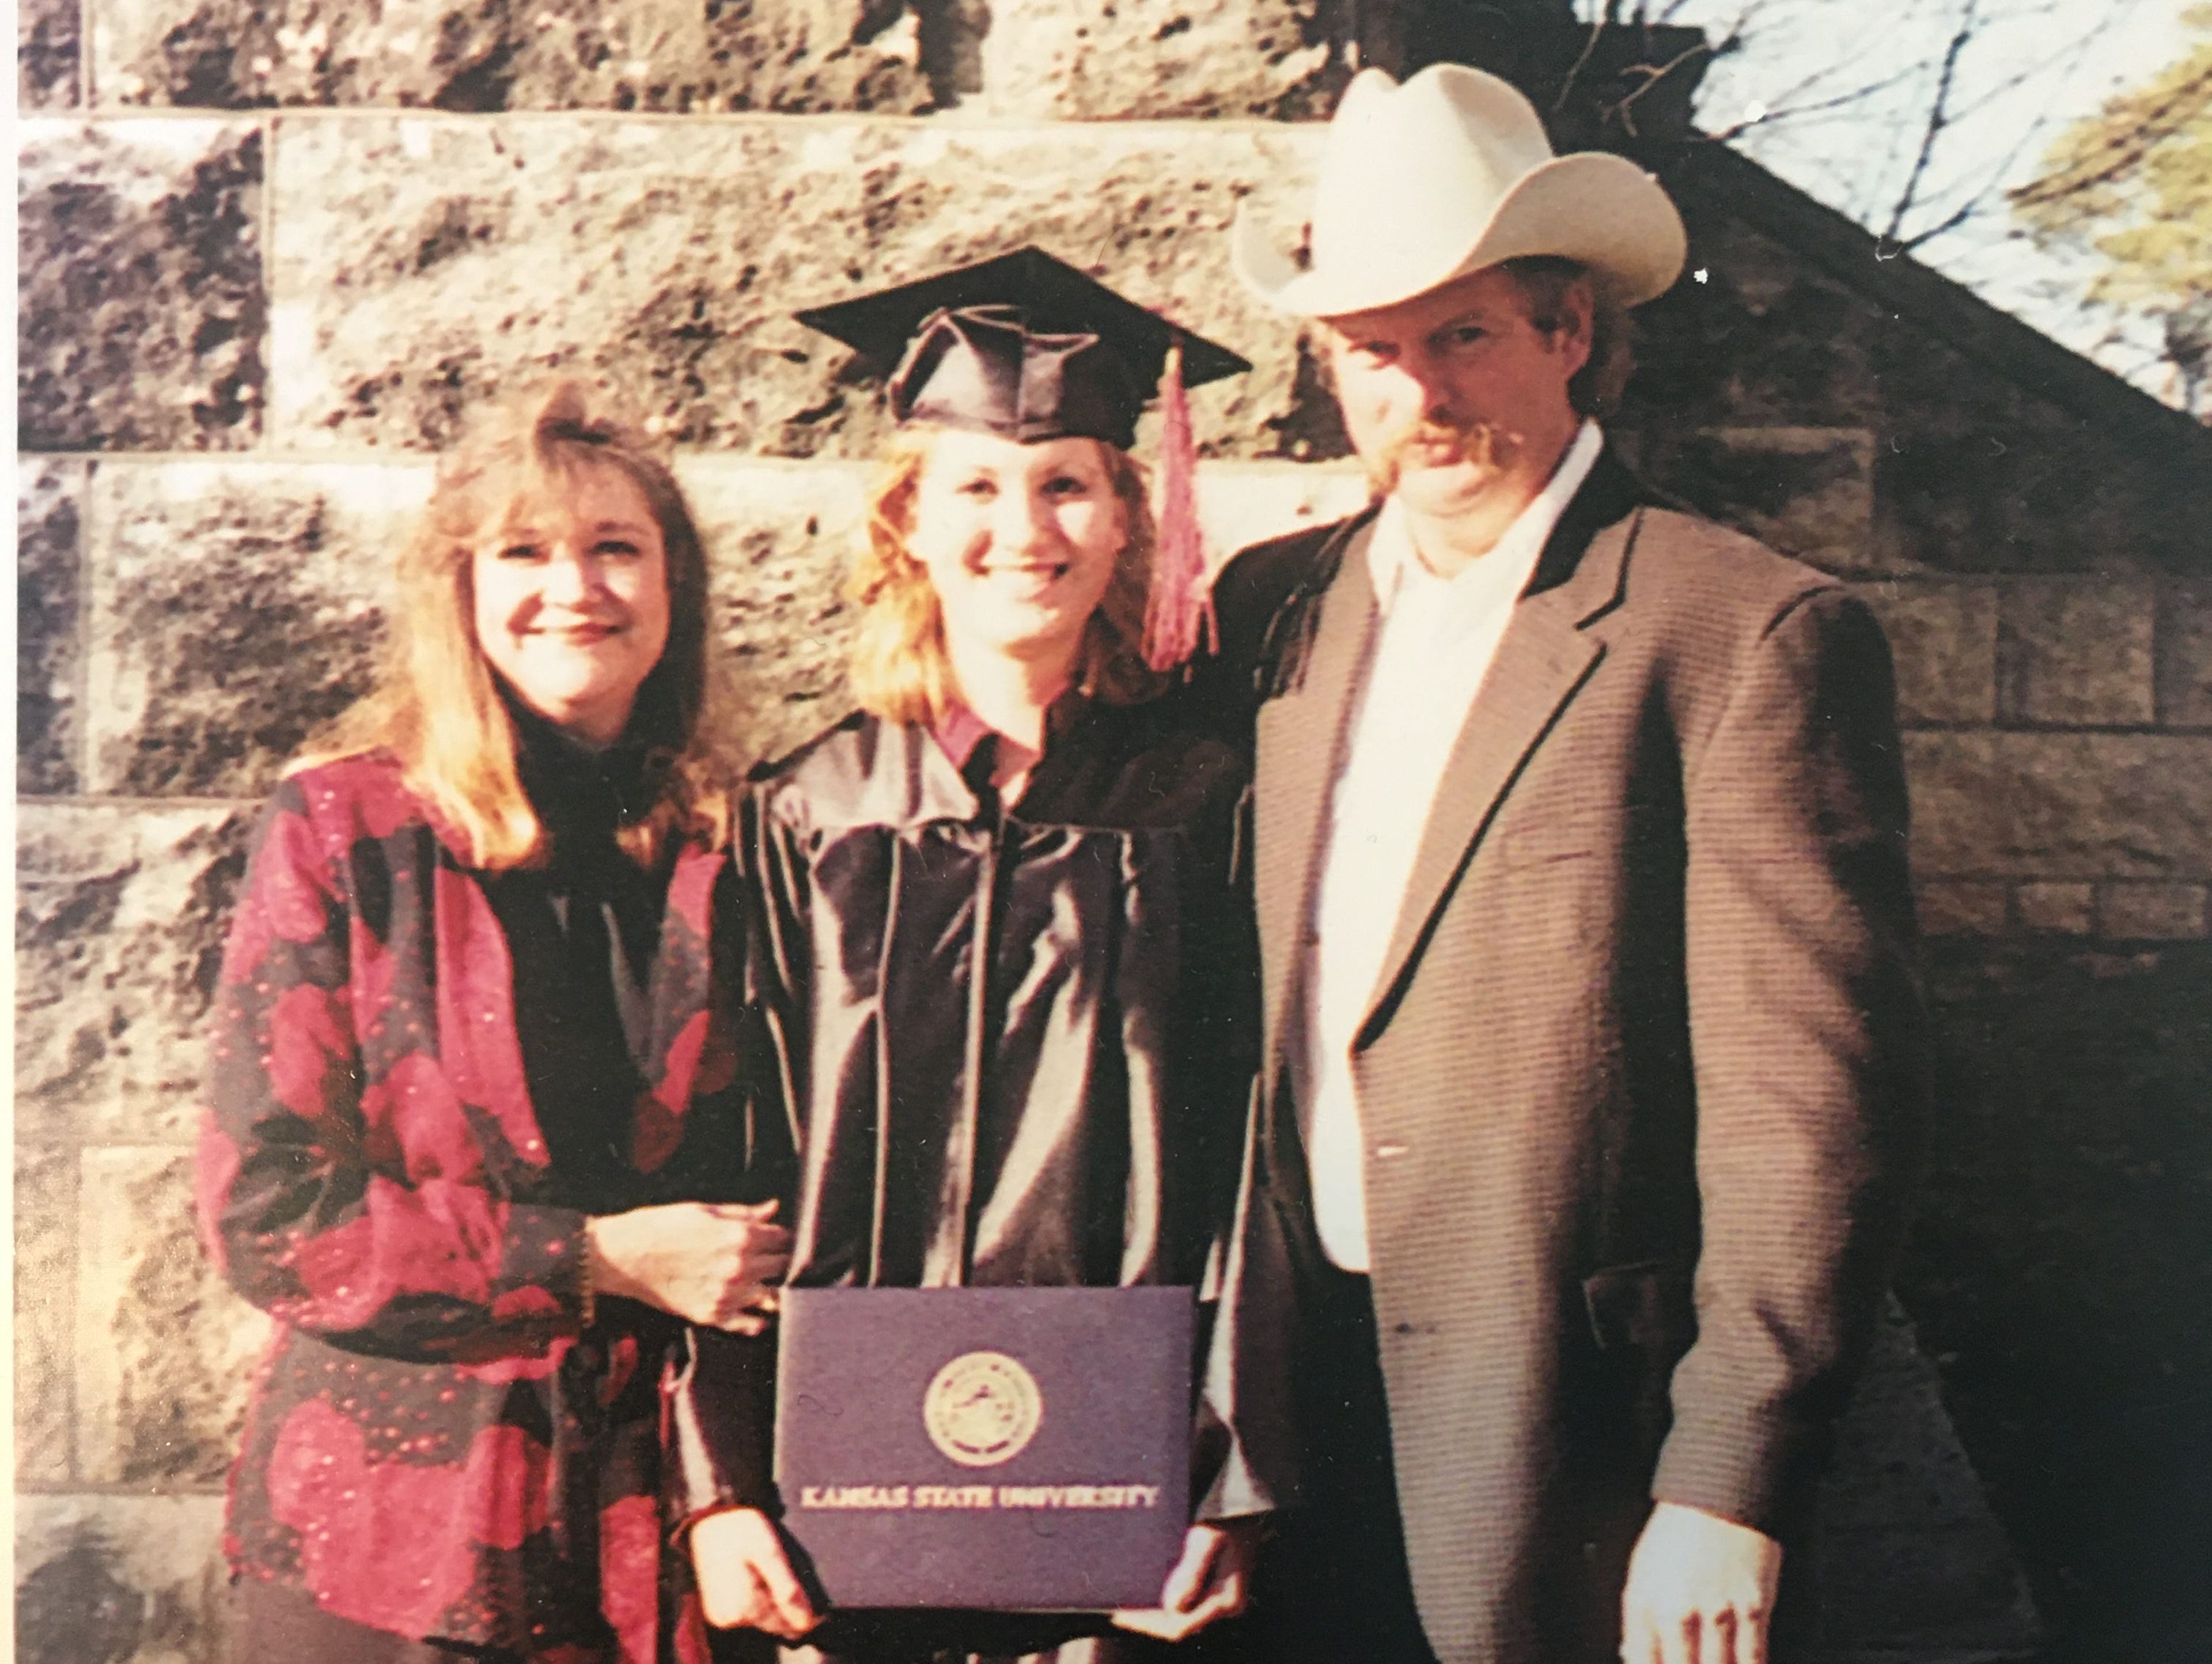 La autora en el centro junto a sus padres tras graduarse.